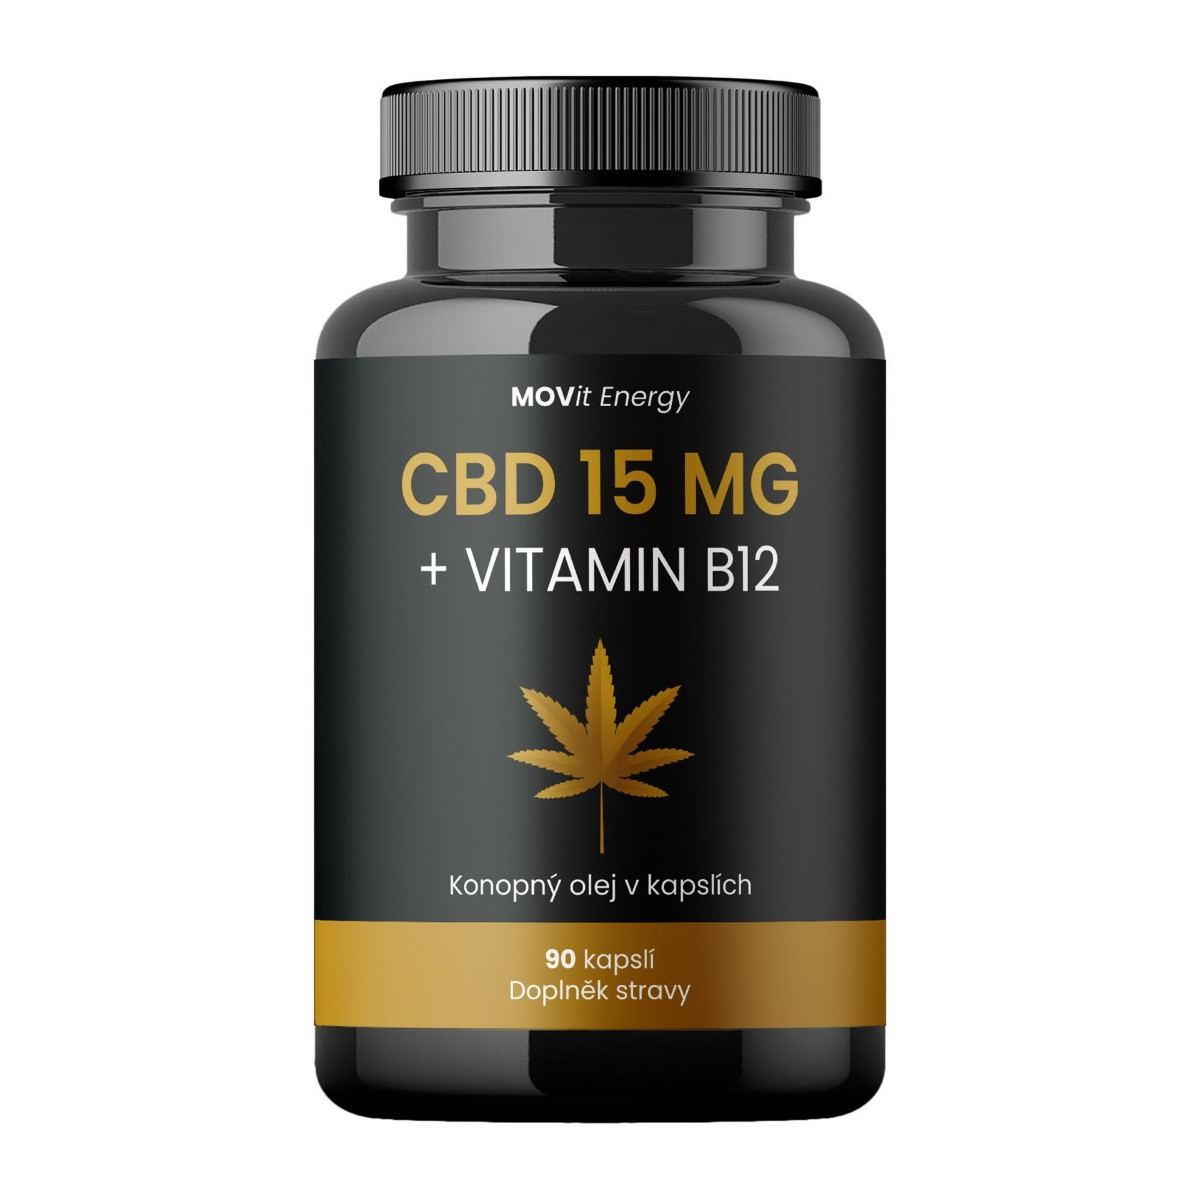 MOVit Energy Konopný olej CBD 15 mg + Vitamin B12 90 kapslí